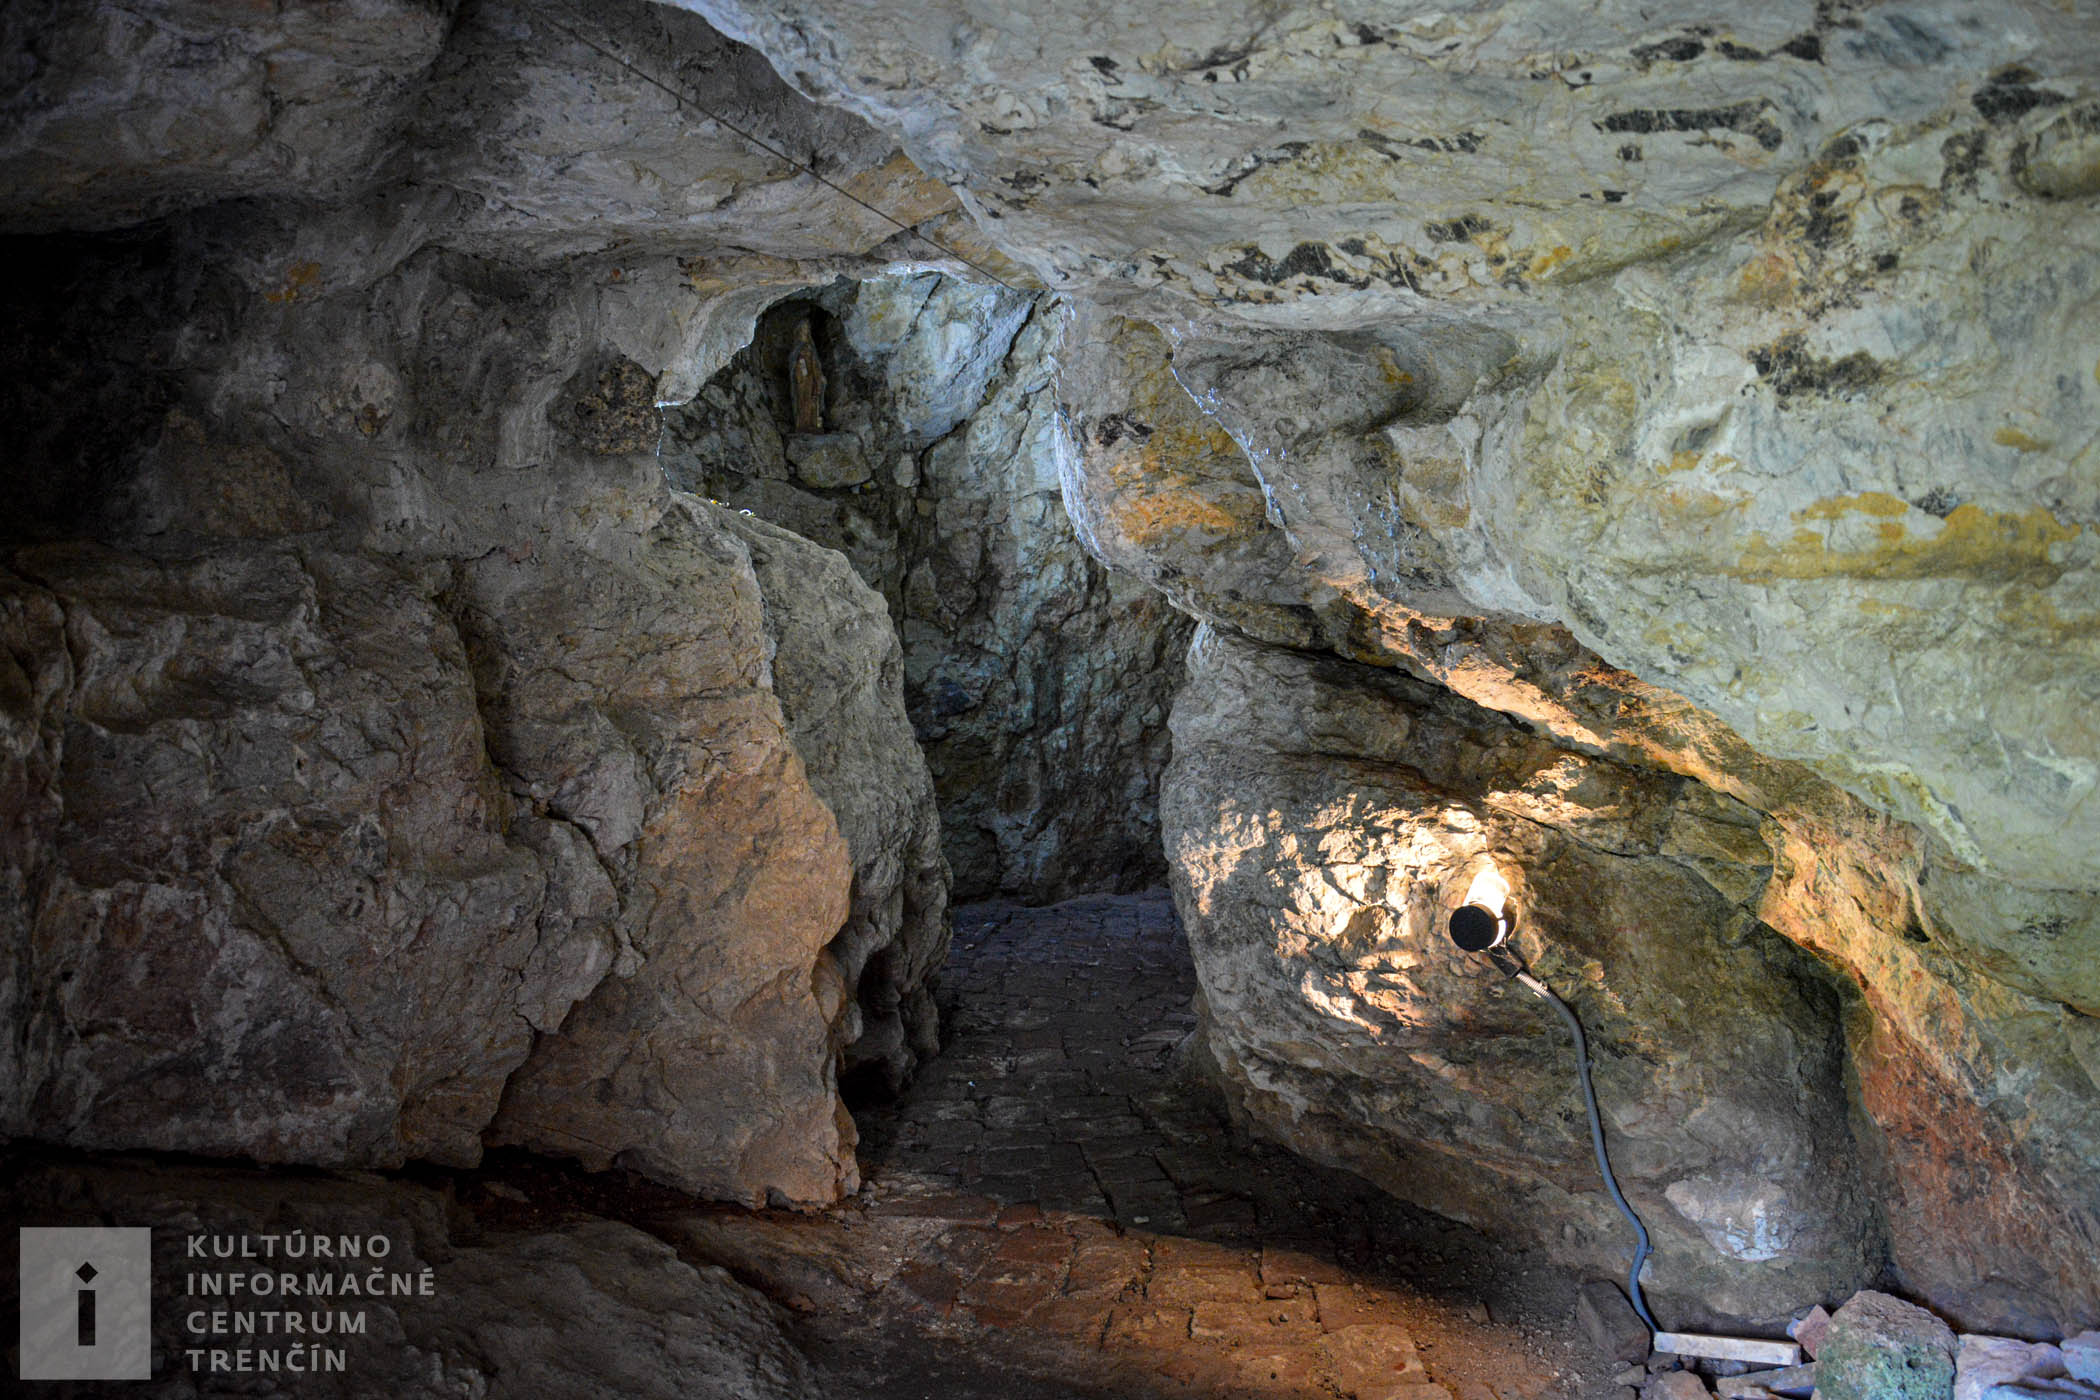 Jaskynná chodba v kláštore na Veľkej Skalke/Cave in the Veľká Skalka Monastery